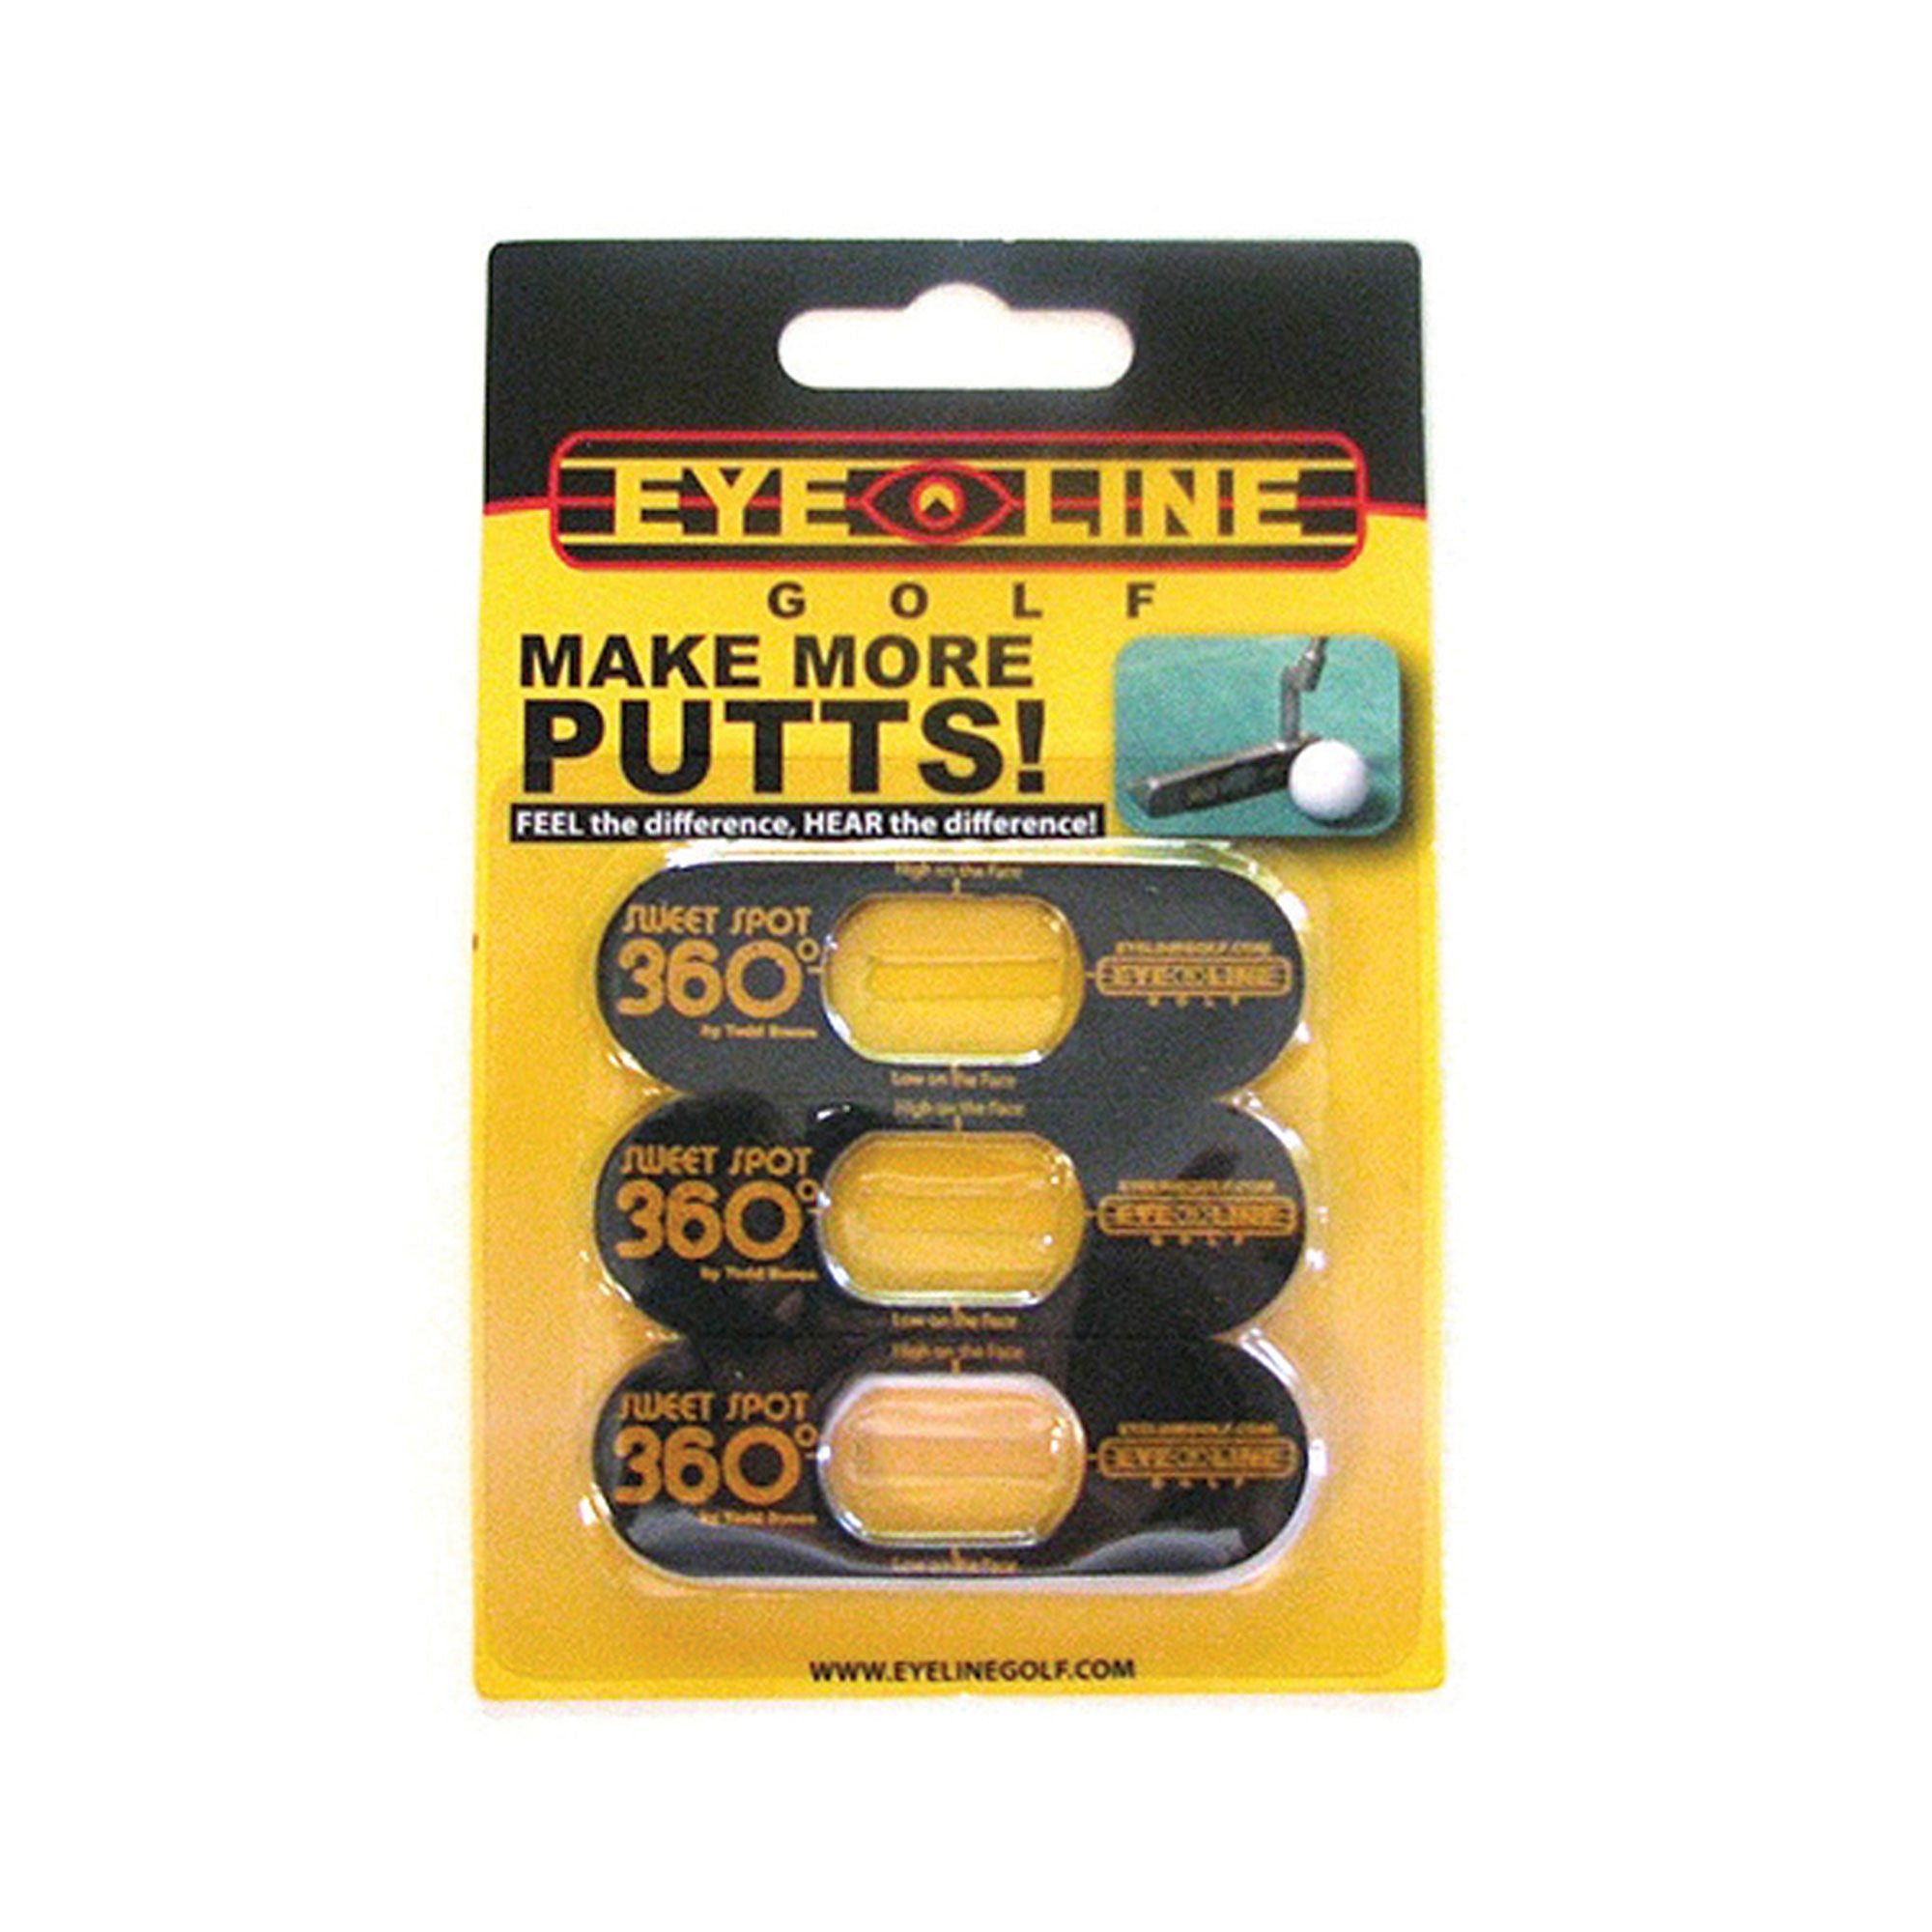 Eyeline Golf - Sweet Spot 360 - Event Stuff Ltd Owns Putterfingers.com!